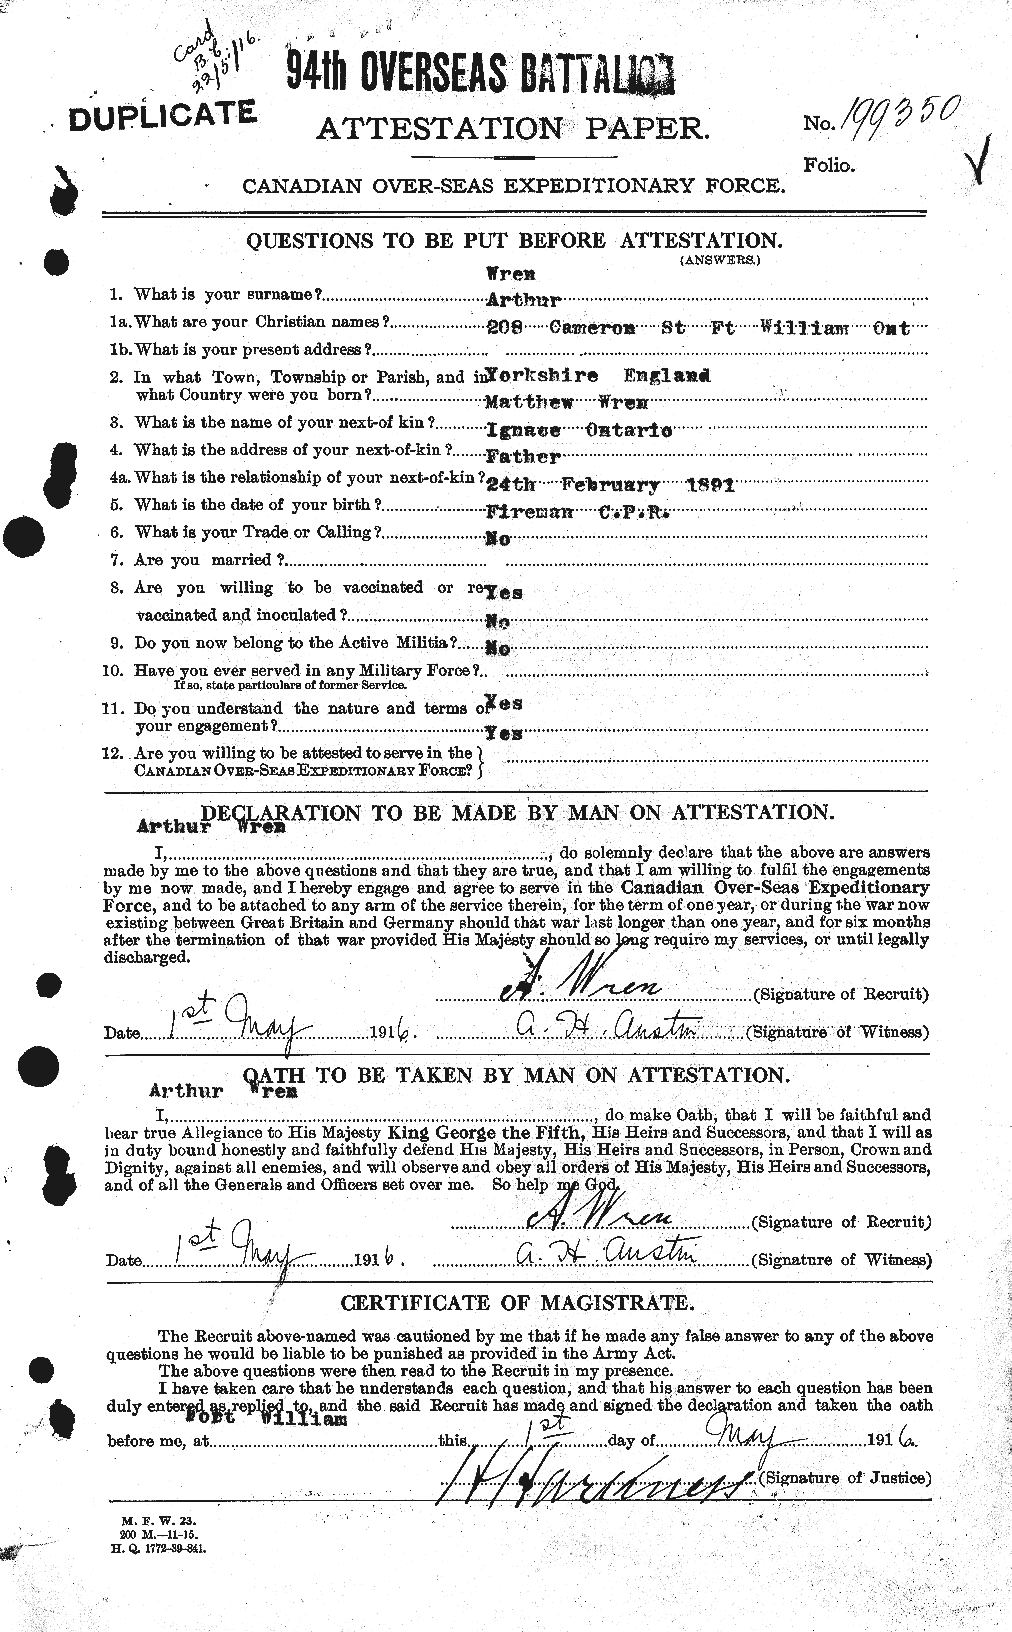 Dossiers du Personnel de la Première Guerre mondiale - CEC 687554a